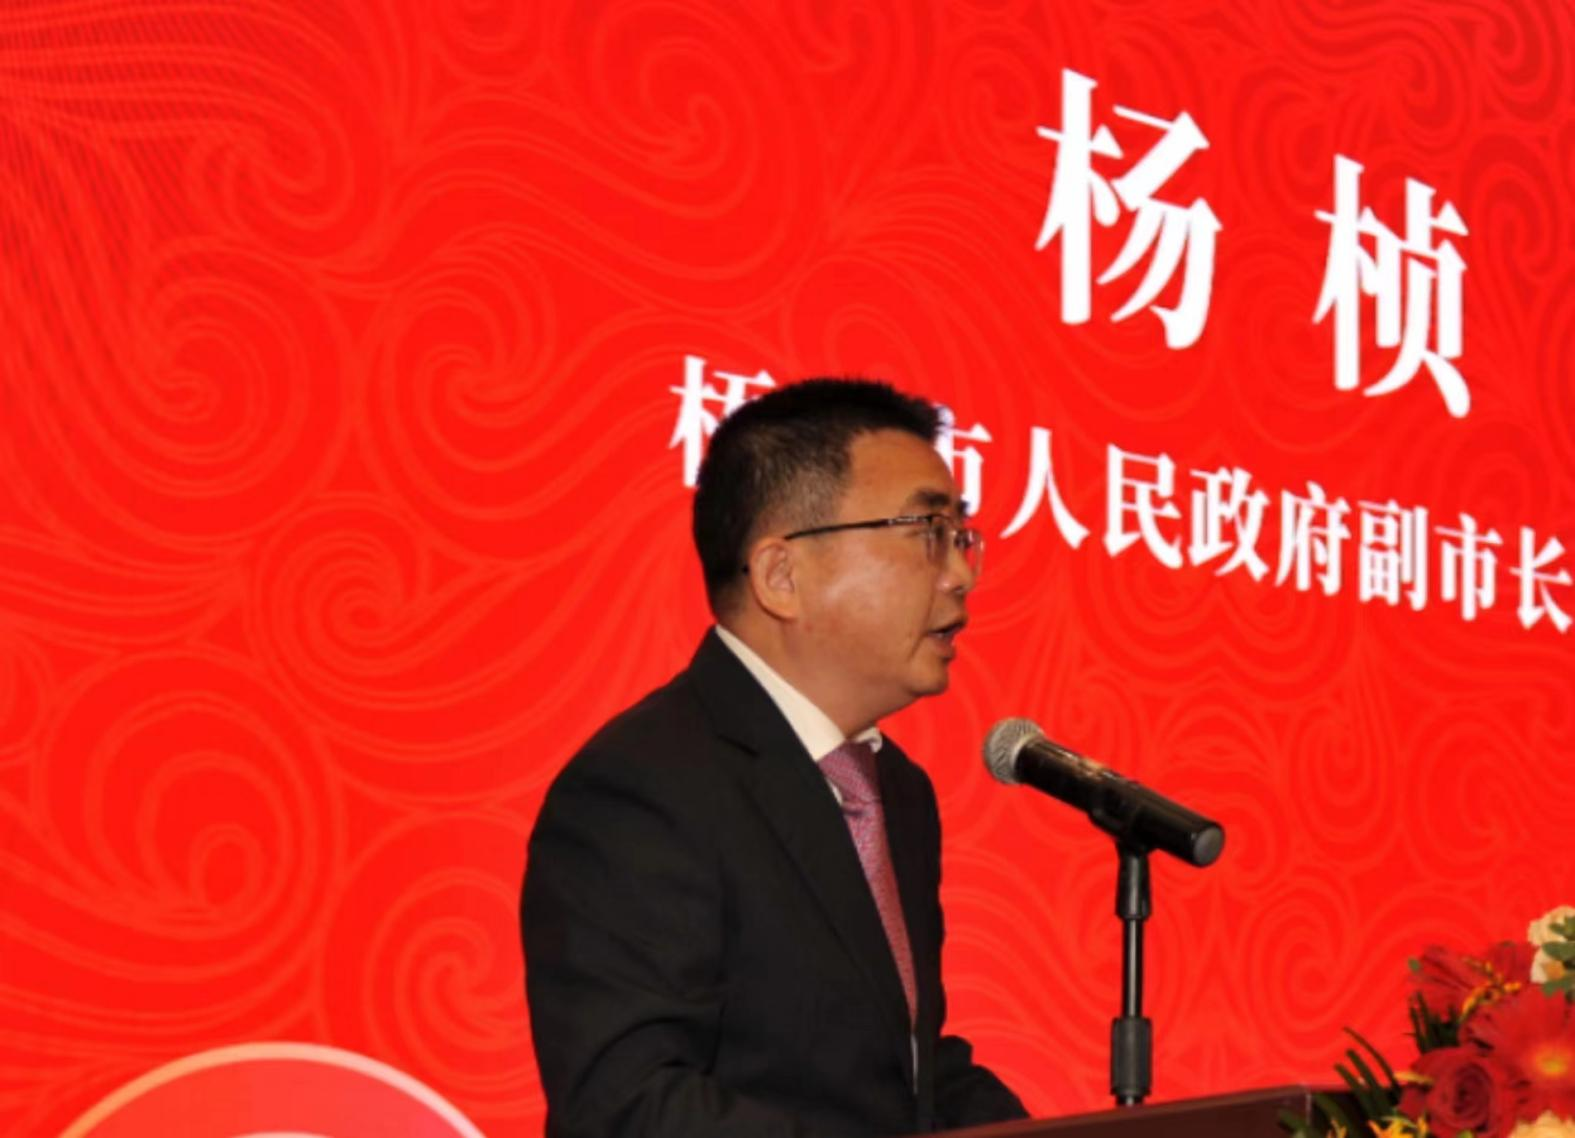 熱烈慶祝中國民族品牌寶玉石發展高峰論壇成功舉辦